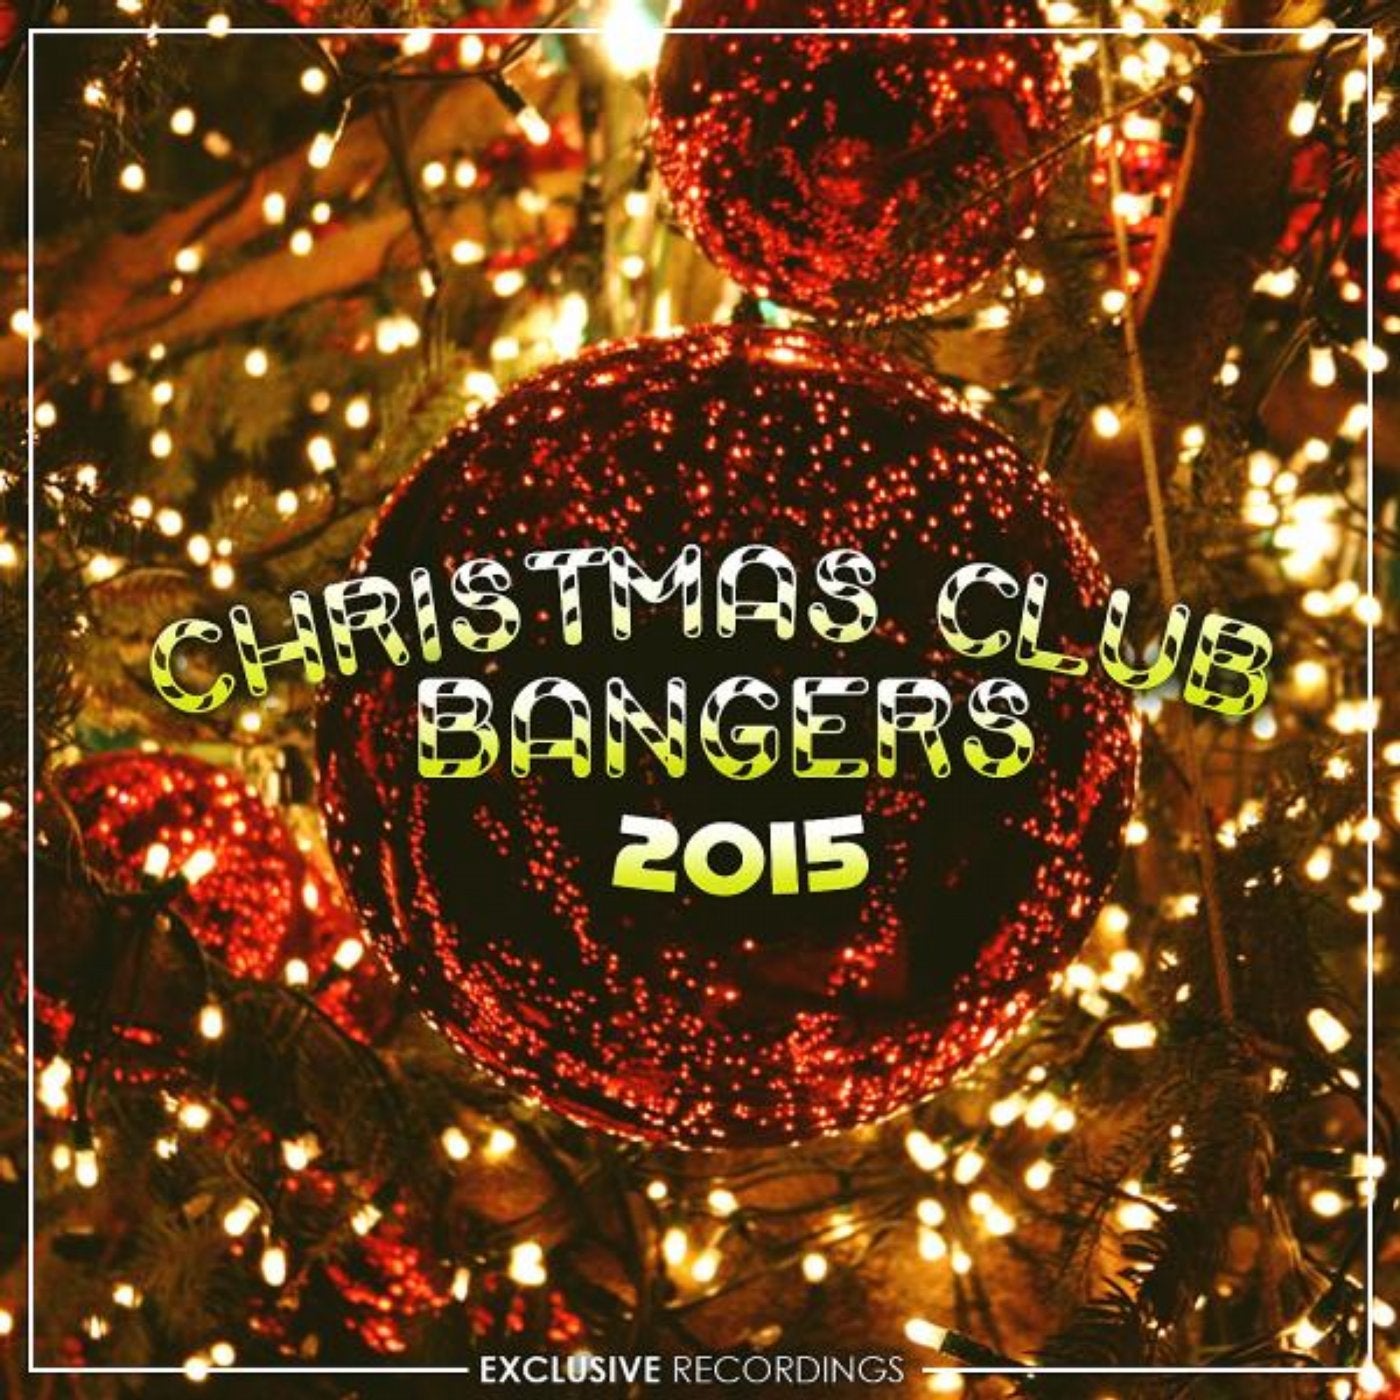 Christmas Club Bangers 2015